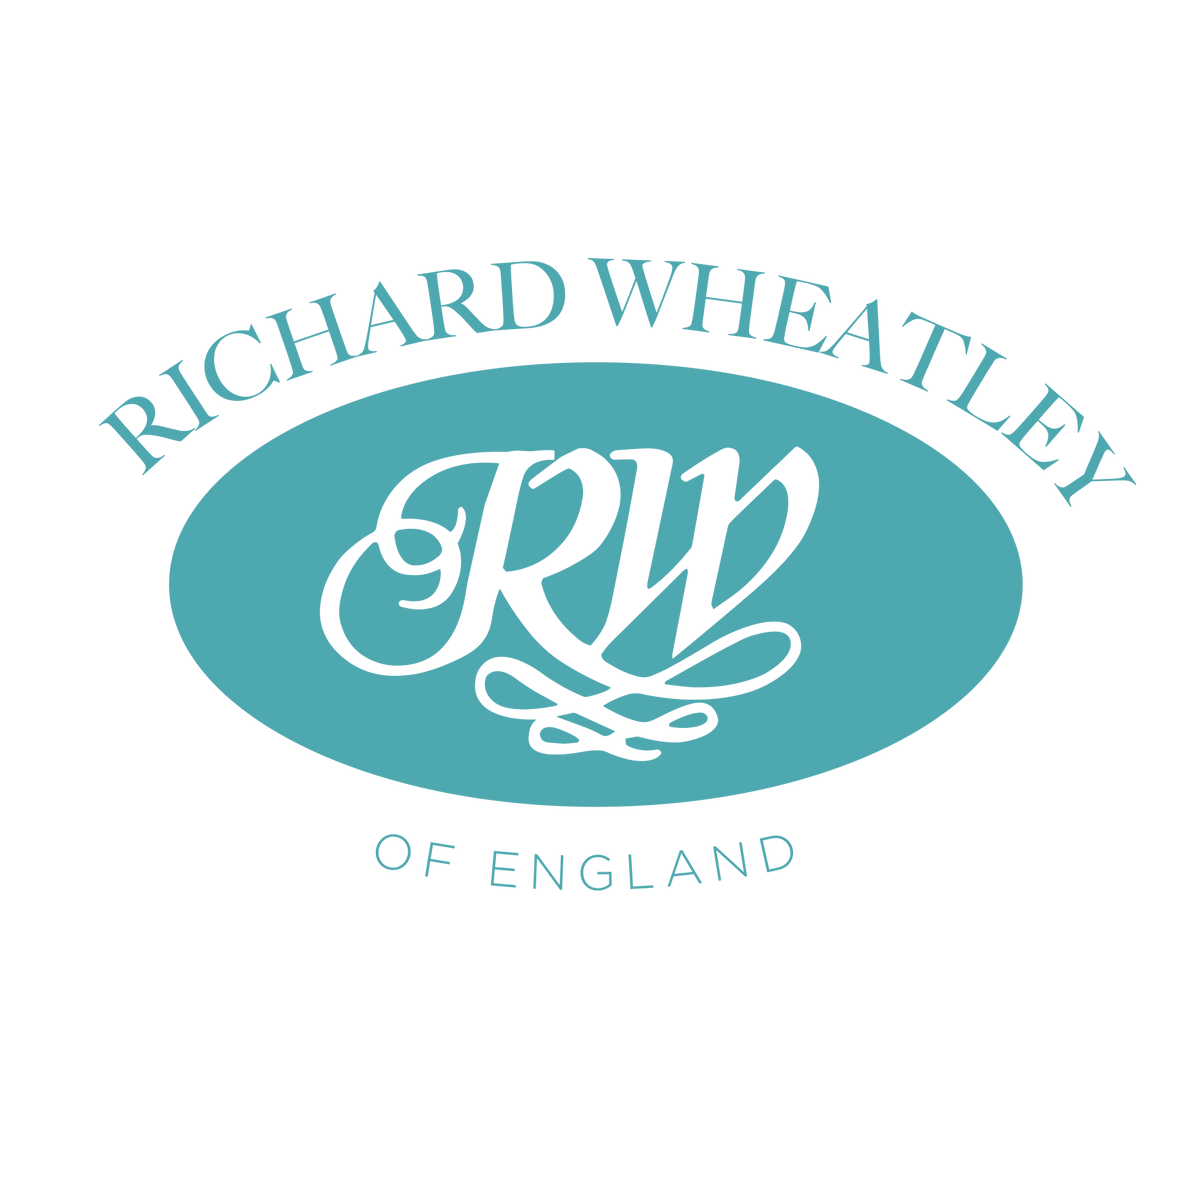 Richard Wheatley Rod Carrier